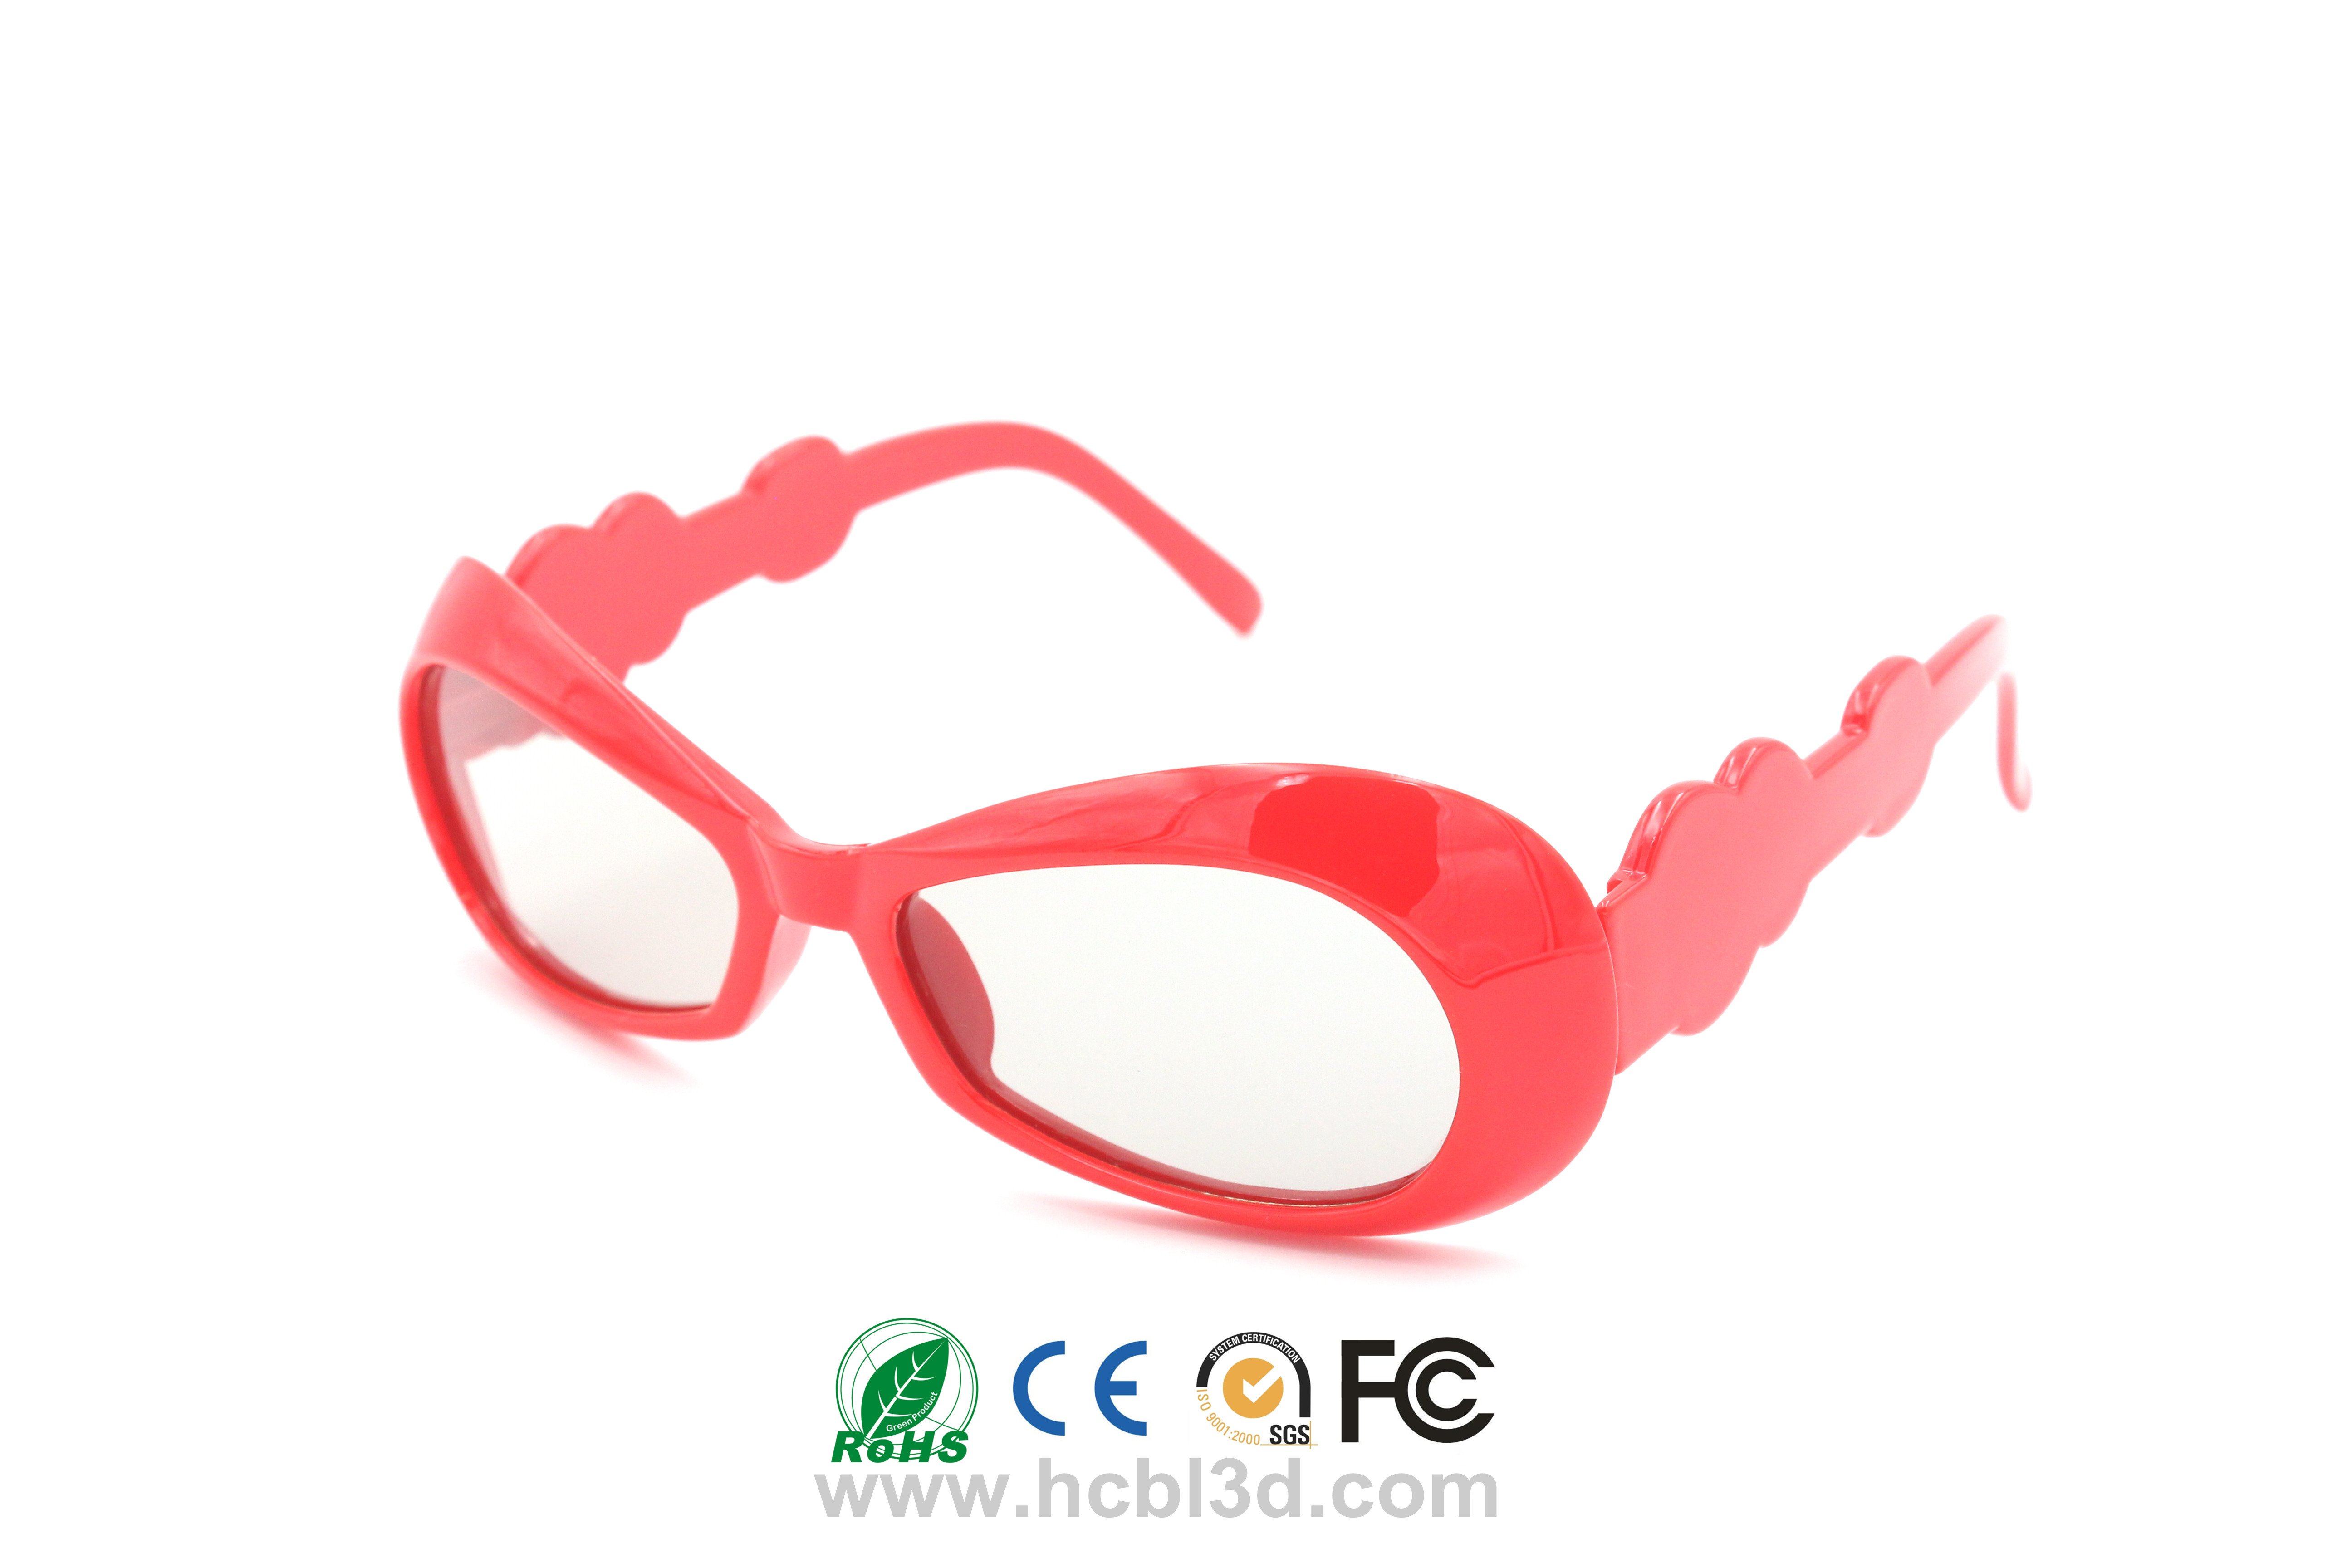 Wiederverwendbarer starker Rahmen für 3D-Brillen für Kinder in mehreren Farben erhältlich